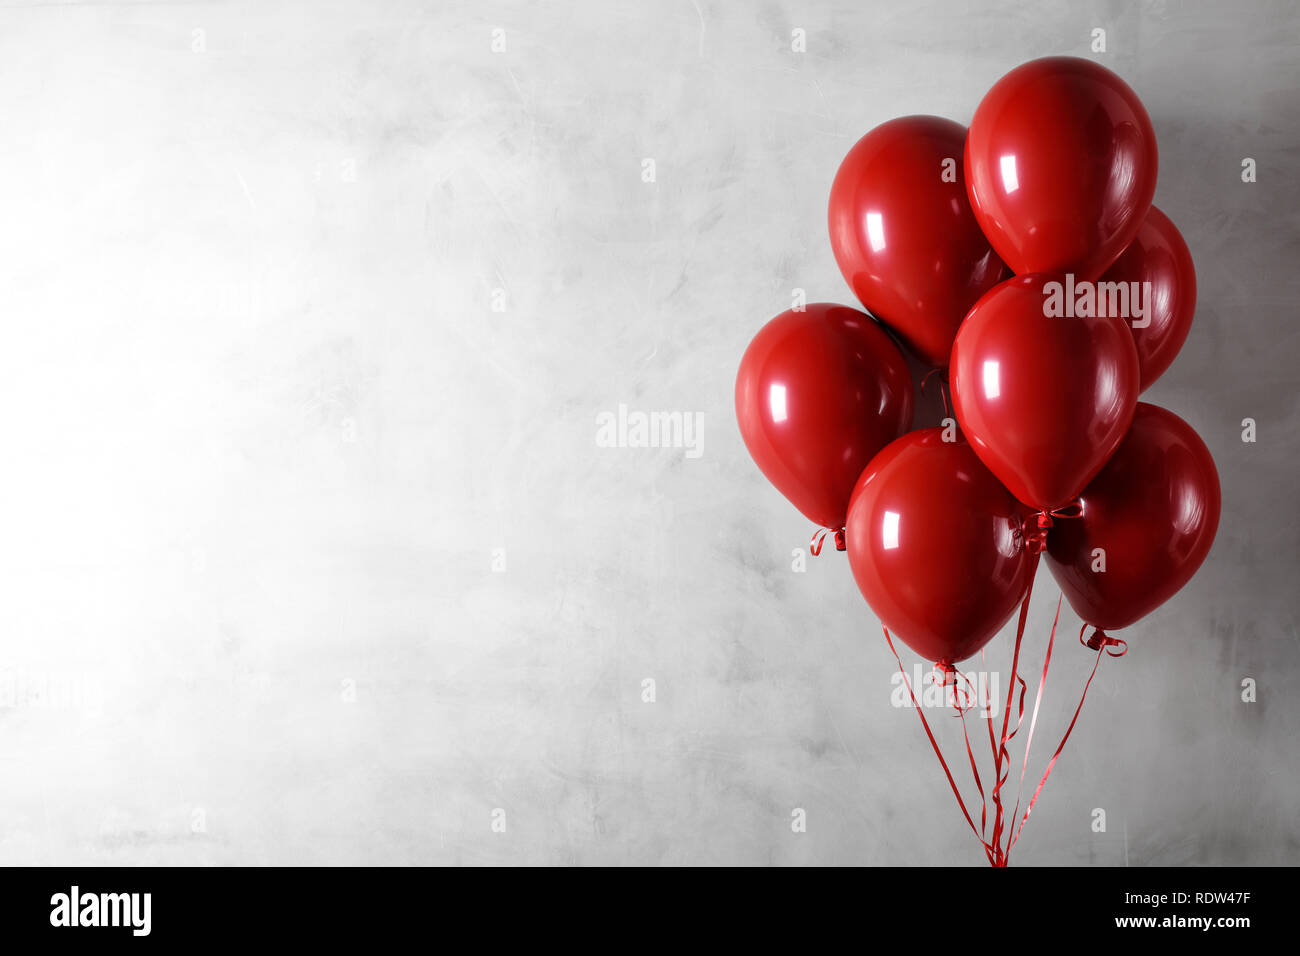 Grappolo di palloncini rossi sulla parete di cemento sullo sfondo Foto Stock